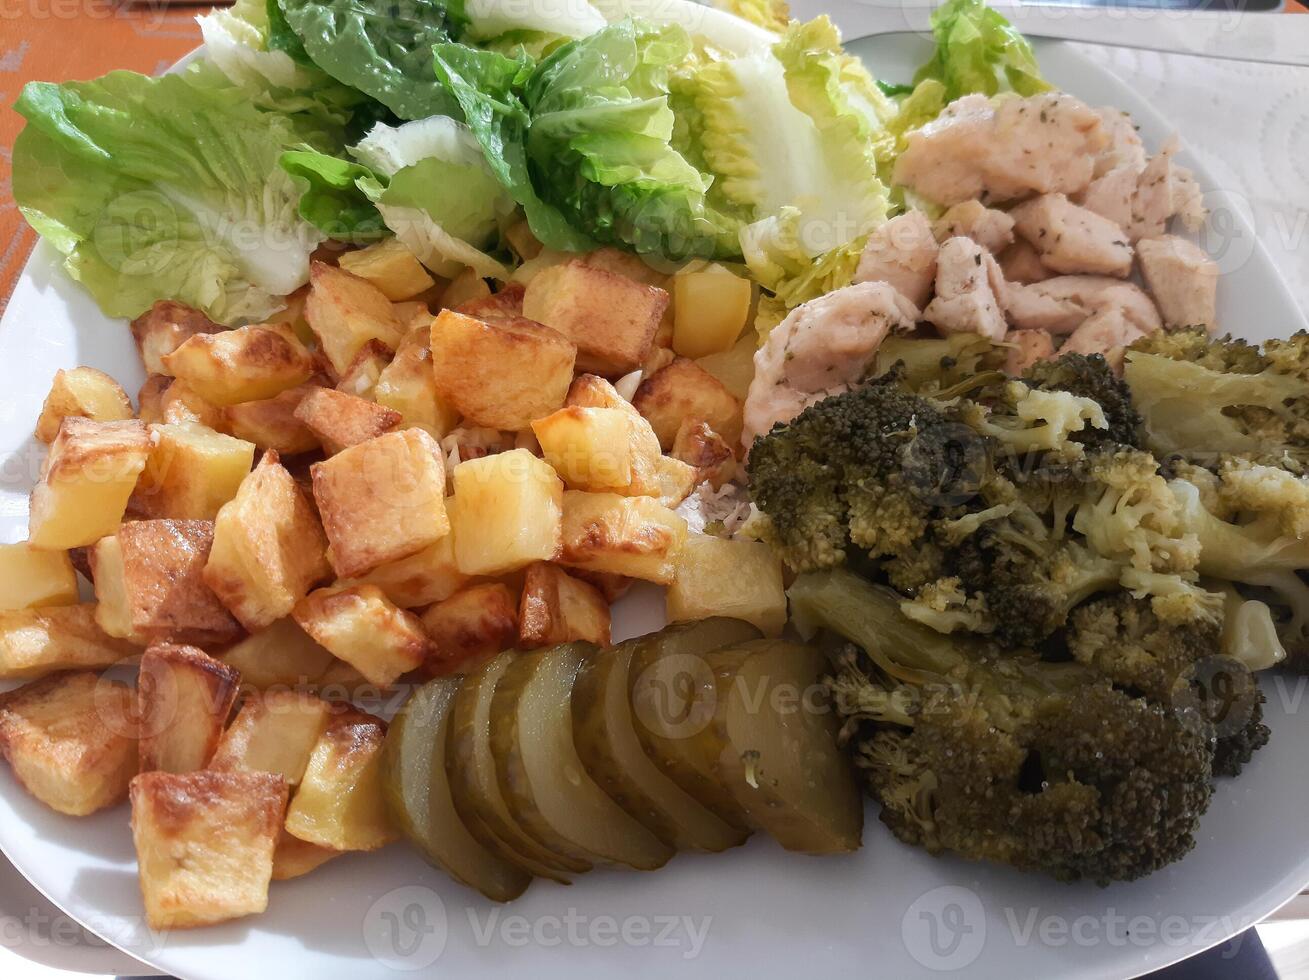 hausgemacht gegrillt Hähnchen mit Französisch Fritten, Grün Salat, Brokkoli und Gurke Gurken serviert auf ein Weiß Teller foto